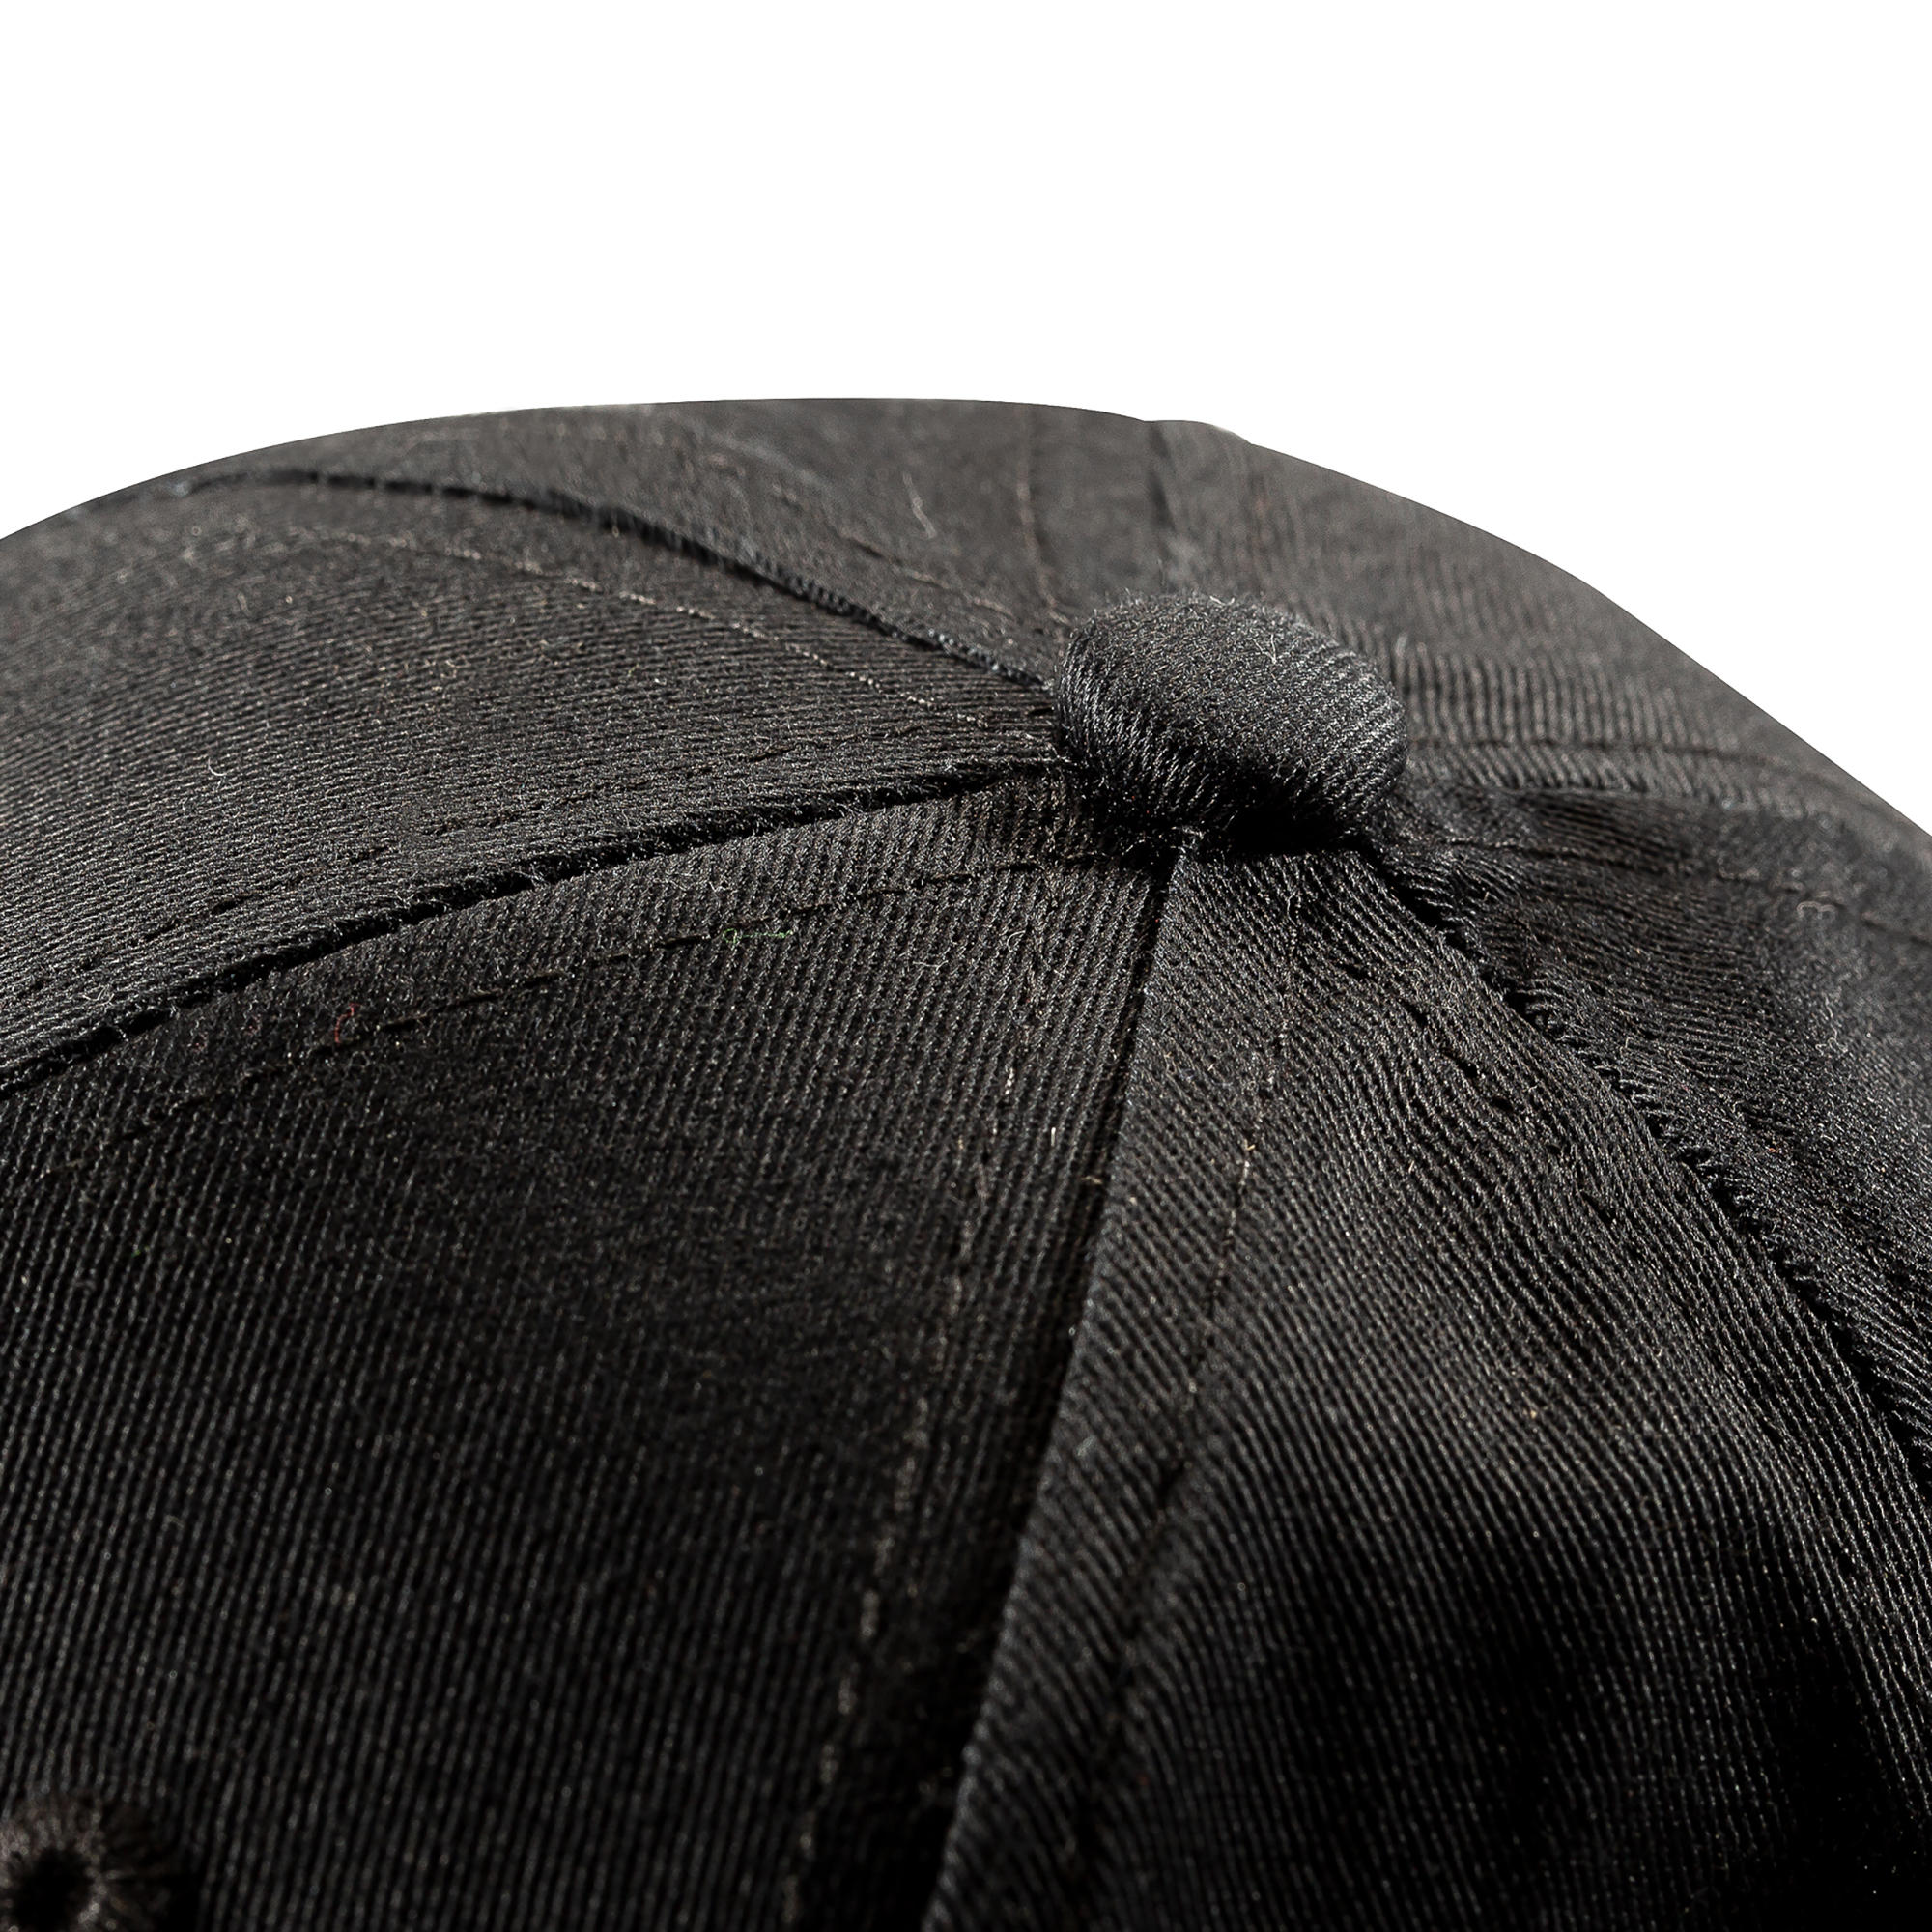 BASEBALL CAP BA500 Black JR 5/8